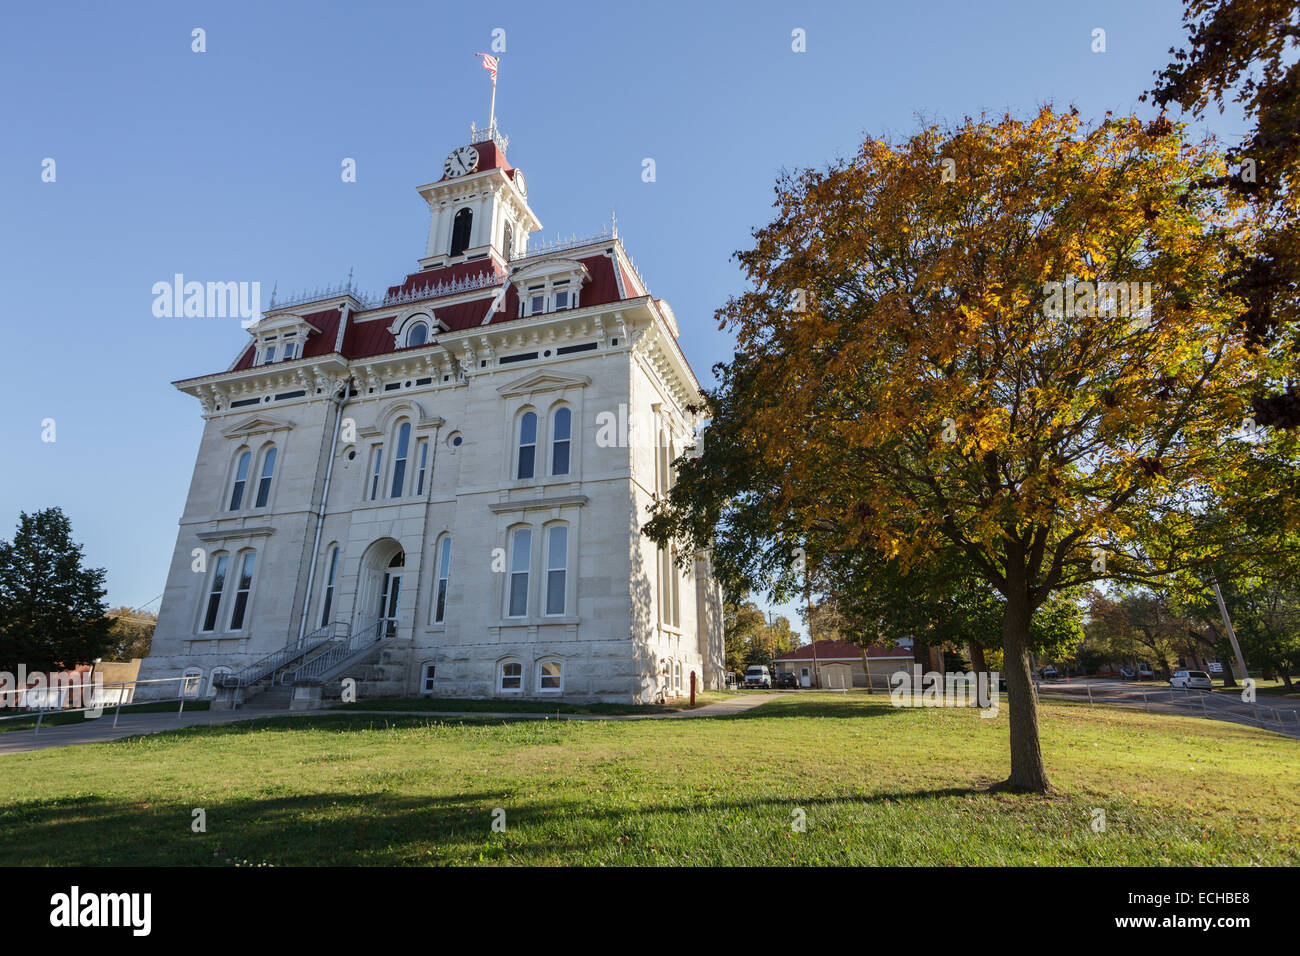 Chase County Courthouse, einheimischen Kalkstein, Cottonwood Falls in Flint Hills von Kansas. Älteste Gerichtsgebäude in KS im Einsatz. Stockfoto